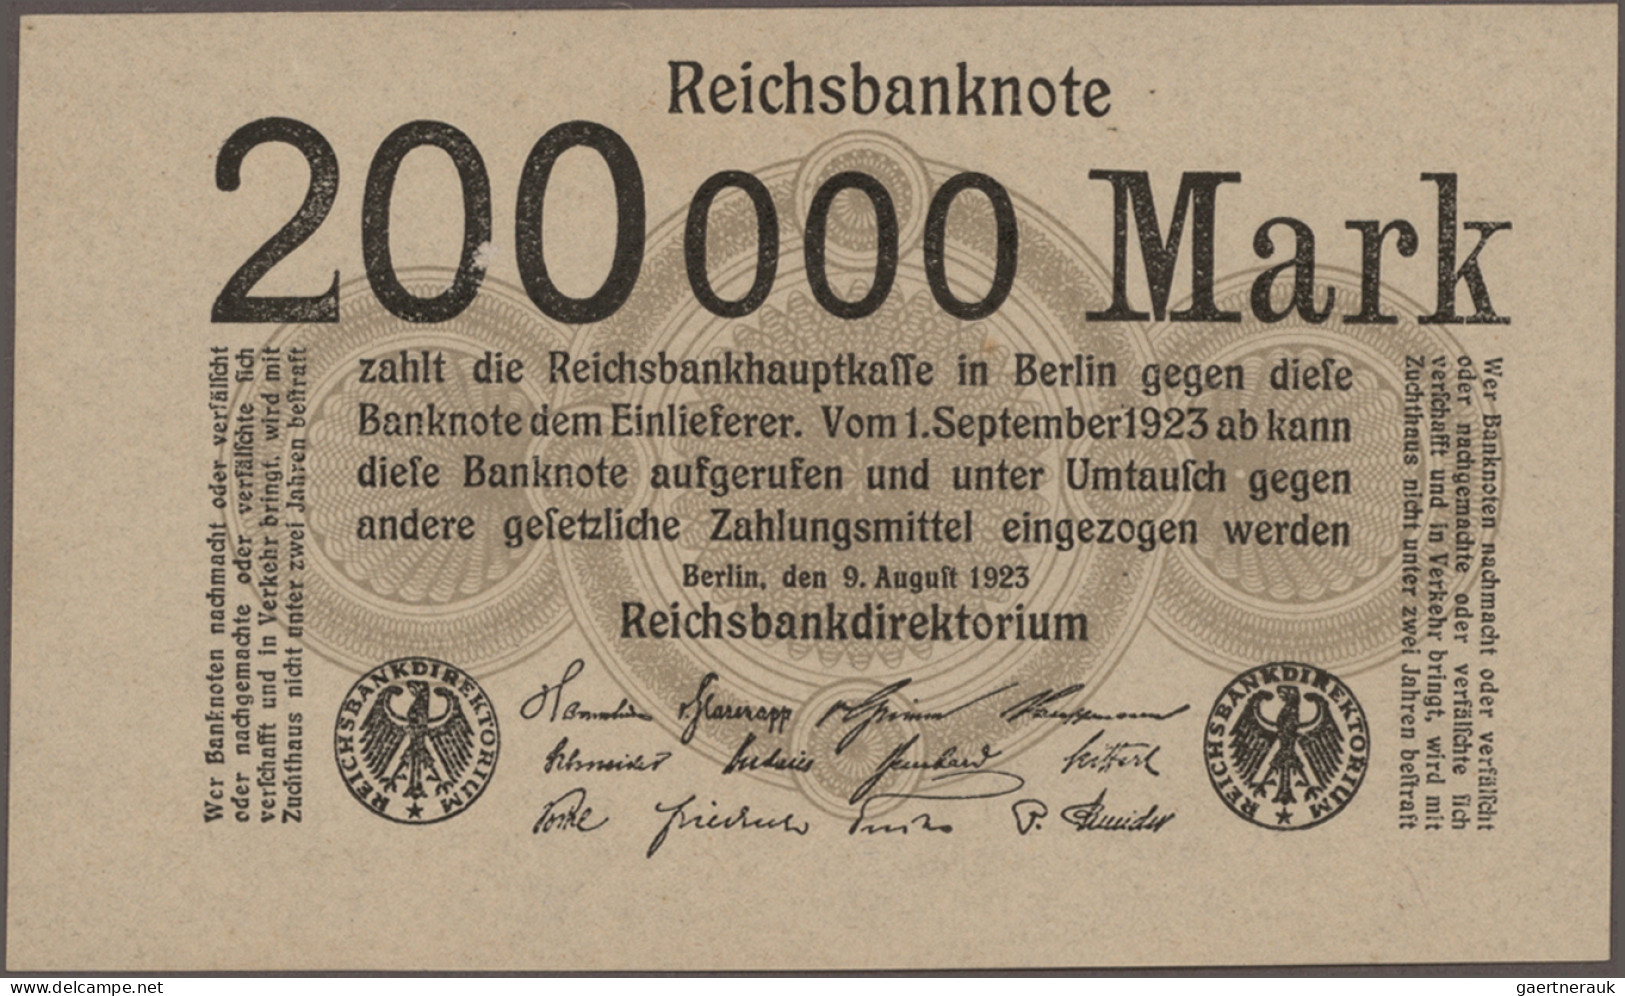 Deutschland - Deutsches Reich bis 1945: Riesiges Konvolut mit 669 Banknoten der